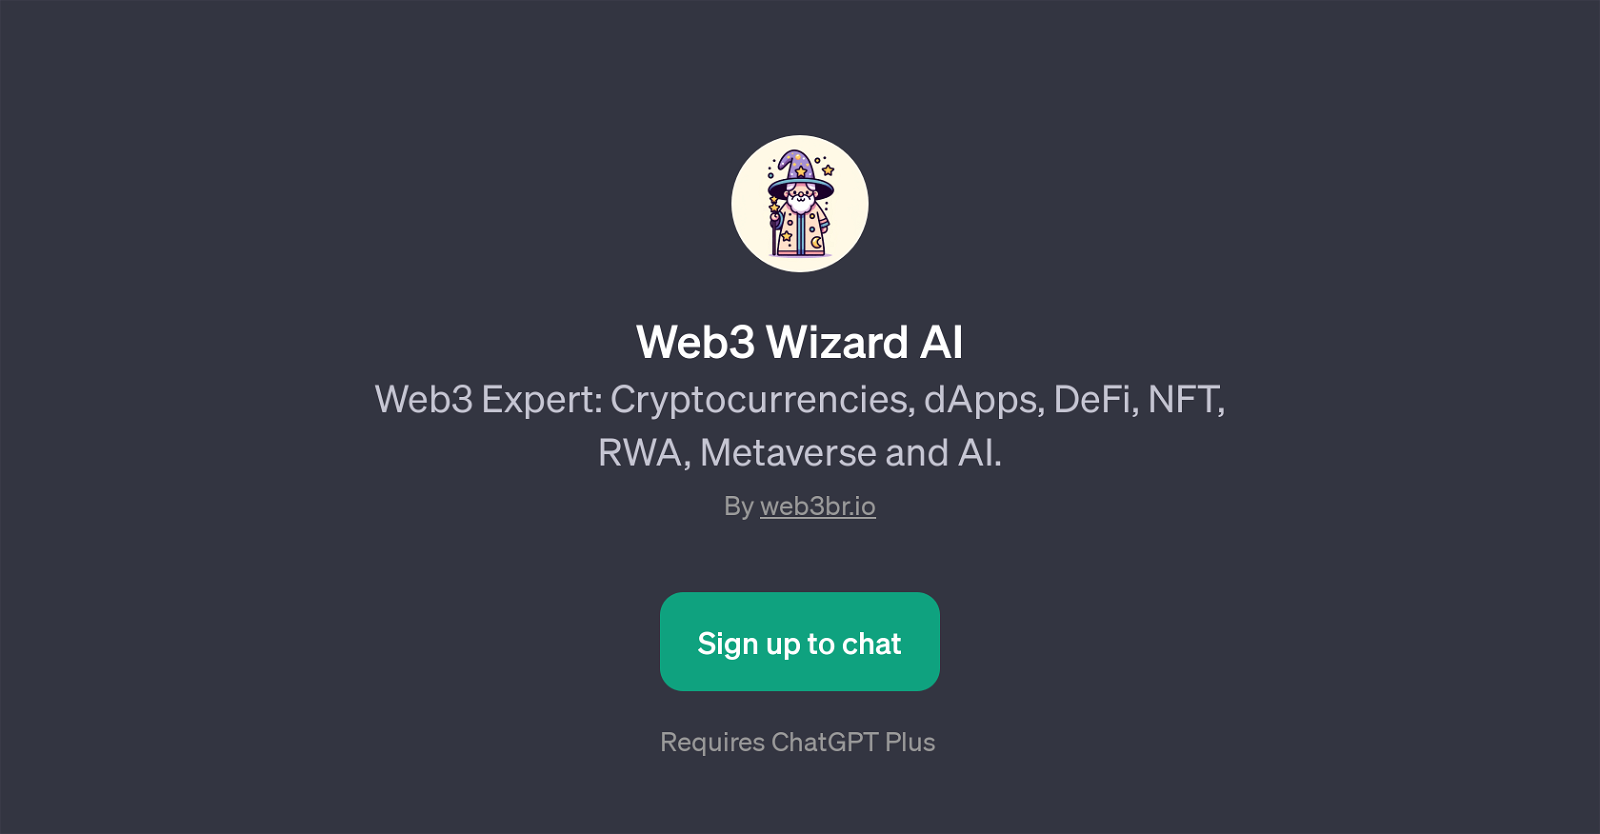 Web3 Wizard AI website